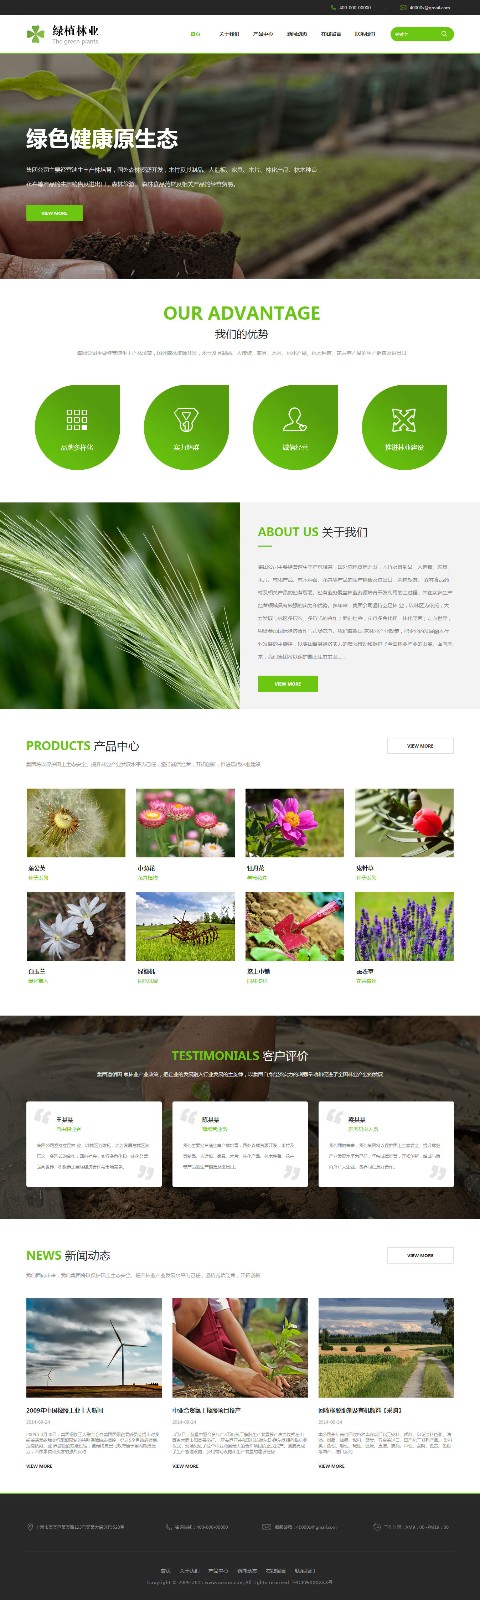 企业网站精美模板-agriculture-1143657